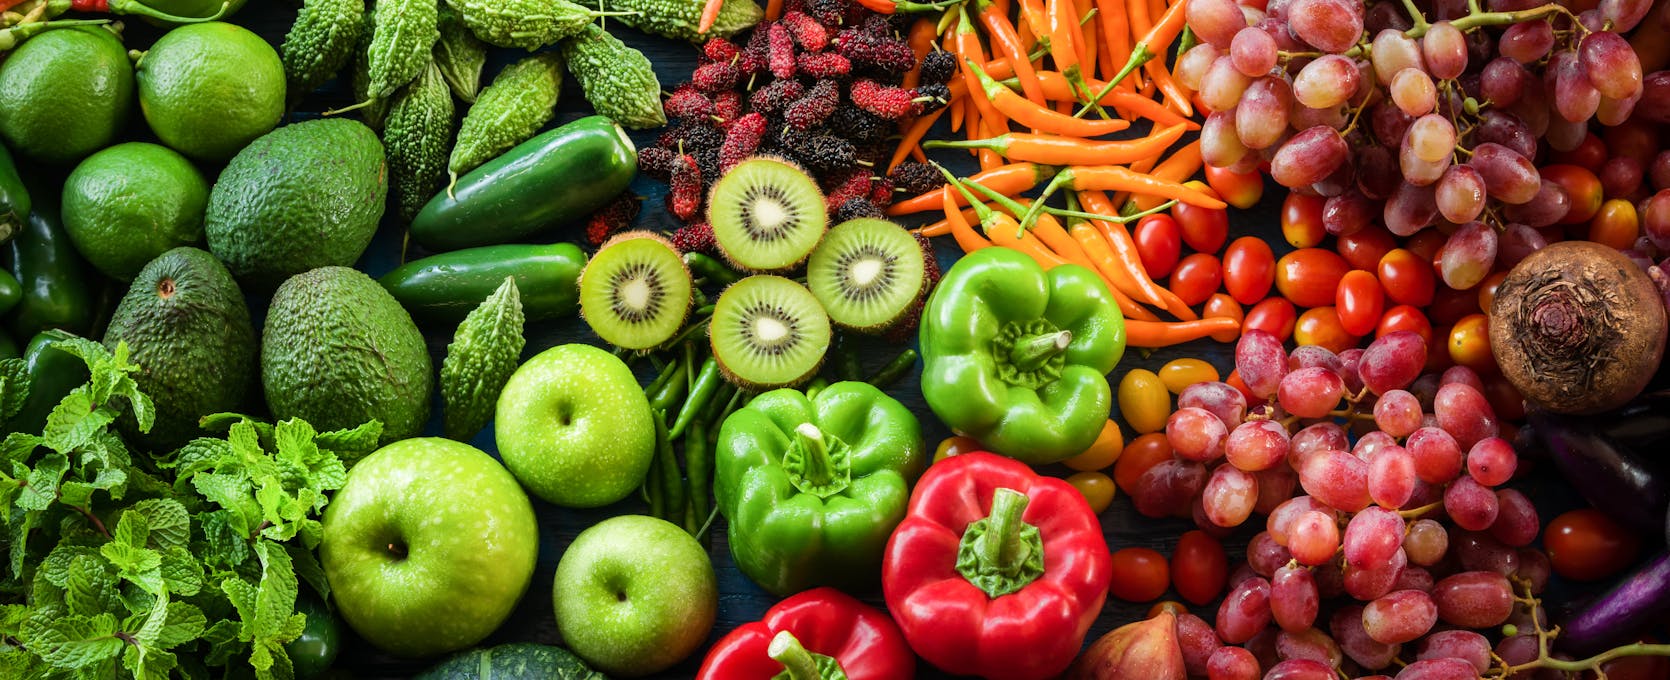 Green vegetables & fruits